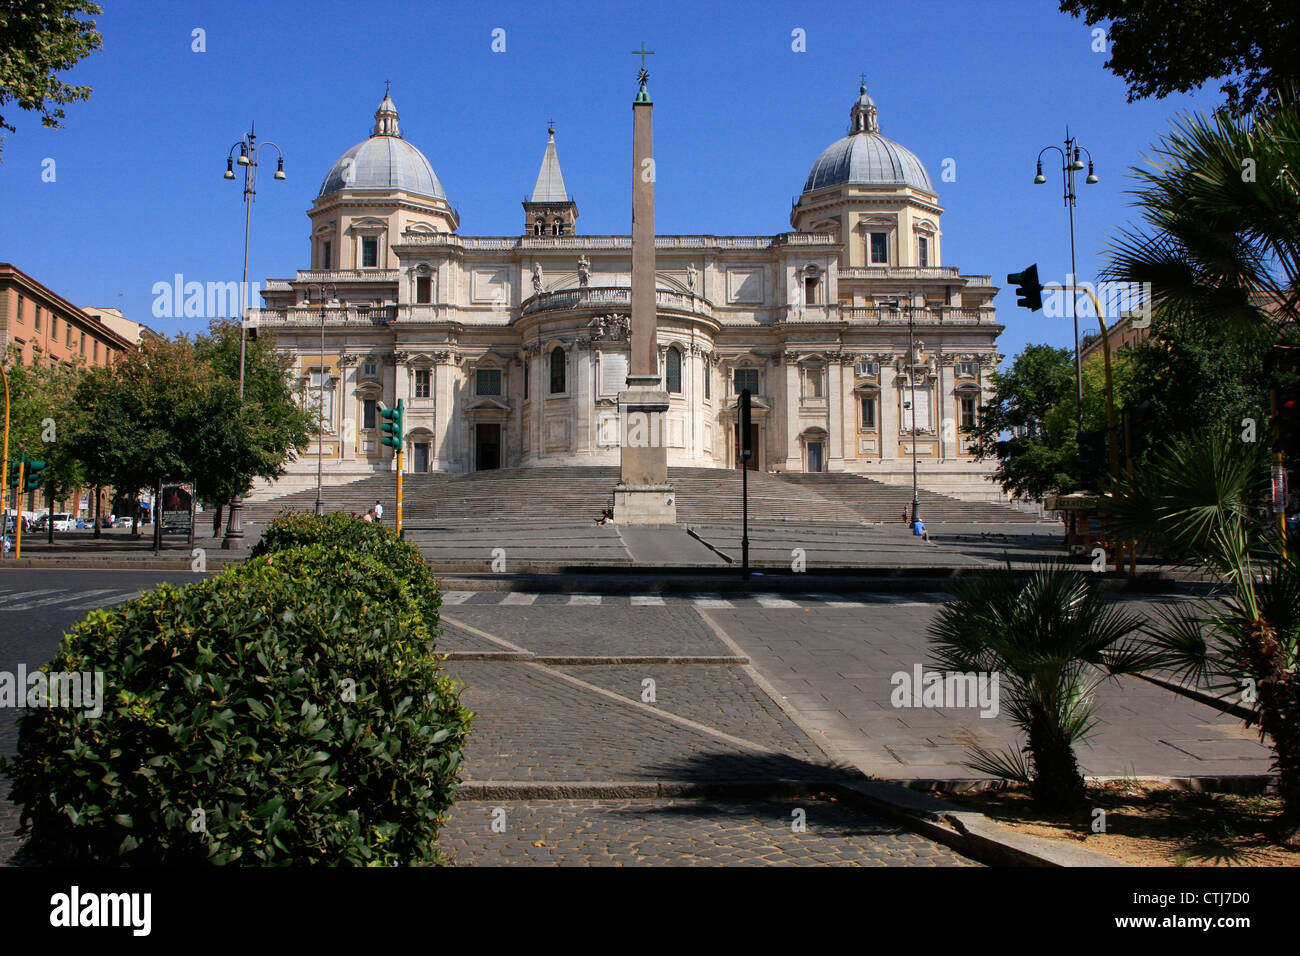 Basilica of Saint Mary Major with blue sky, Rome, Italy Stock Photo